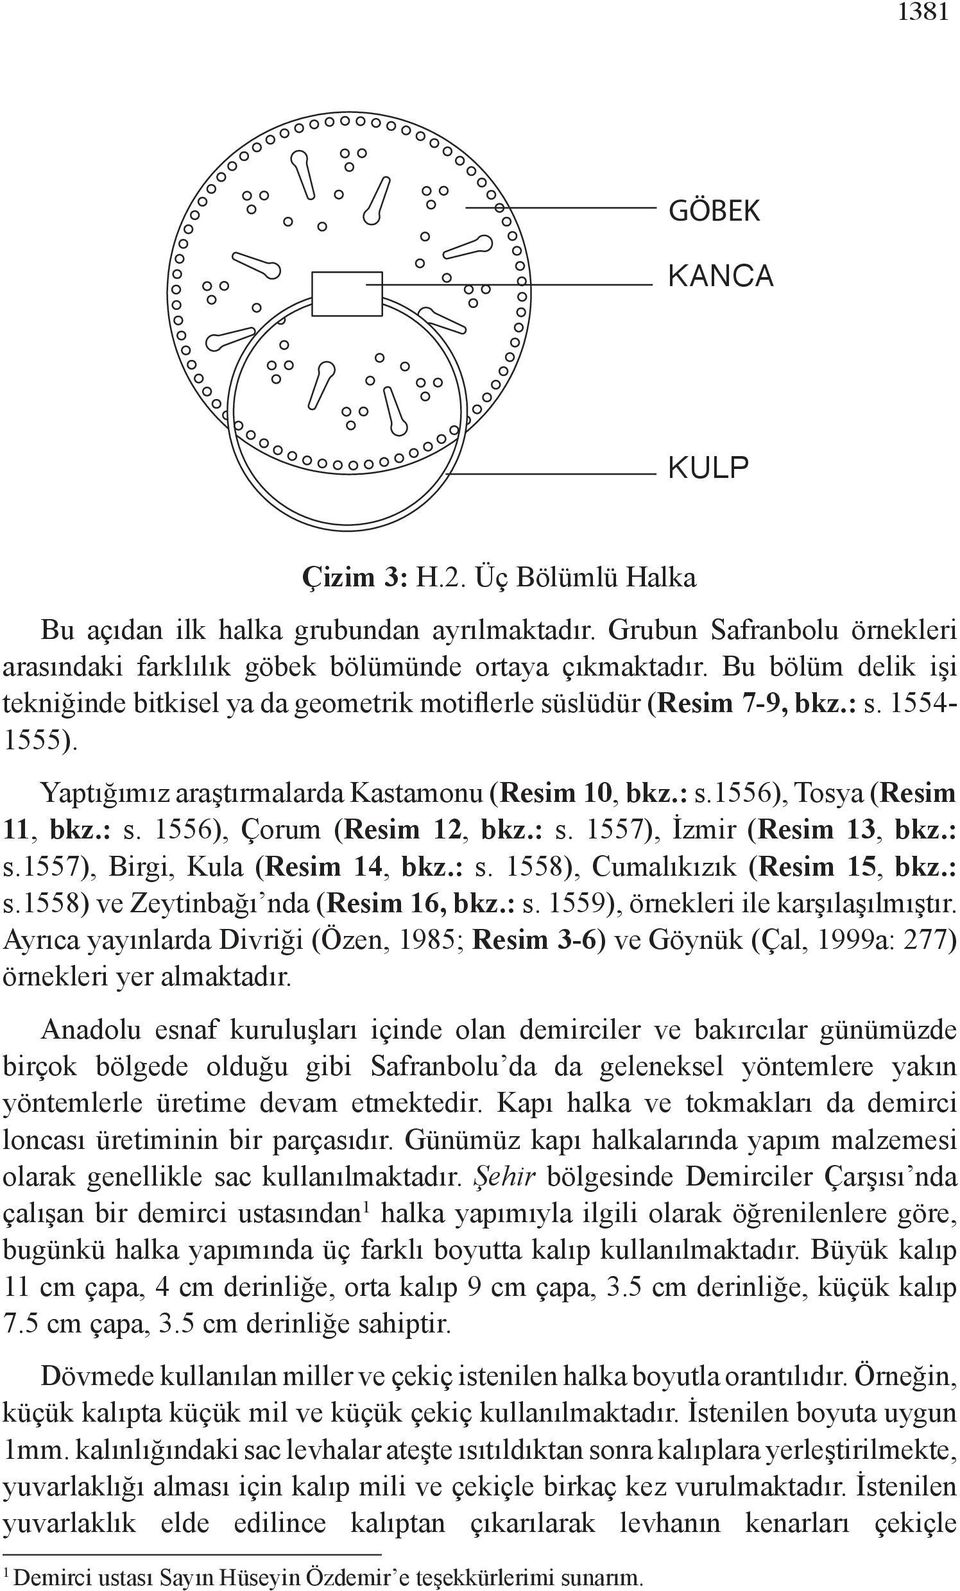 : s. 1557), İzmir (Resim 13, bkz.: s.1557), Birgi, Kula (Resim 14, bkz.: s. 1558), Cumalıkızık (Resim 15, bkz.: s.1558) ve Zeytinbağı nda (Resim 16, bkz.: s. 1559), örnekleri ile karşılaşılmıştır.